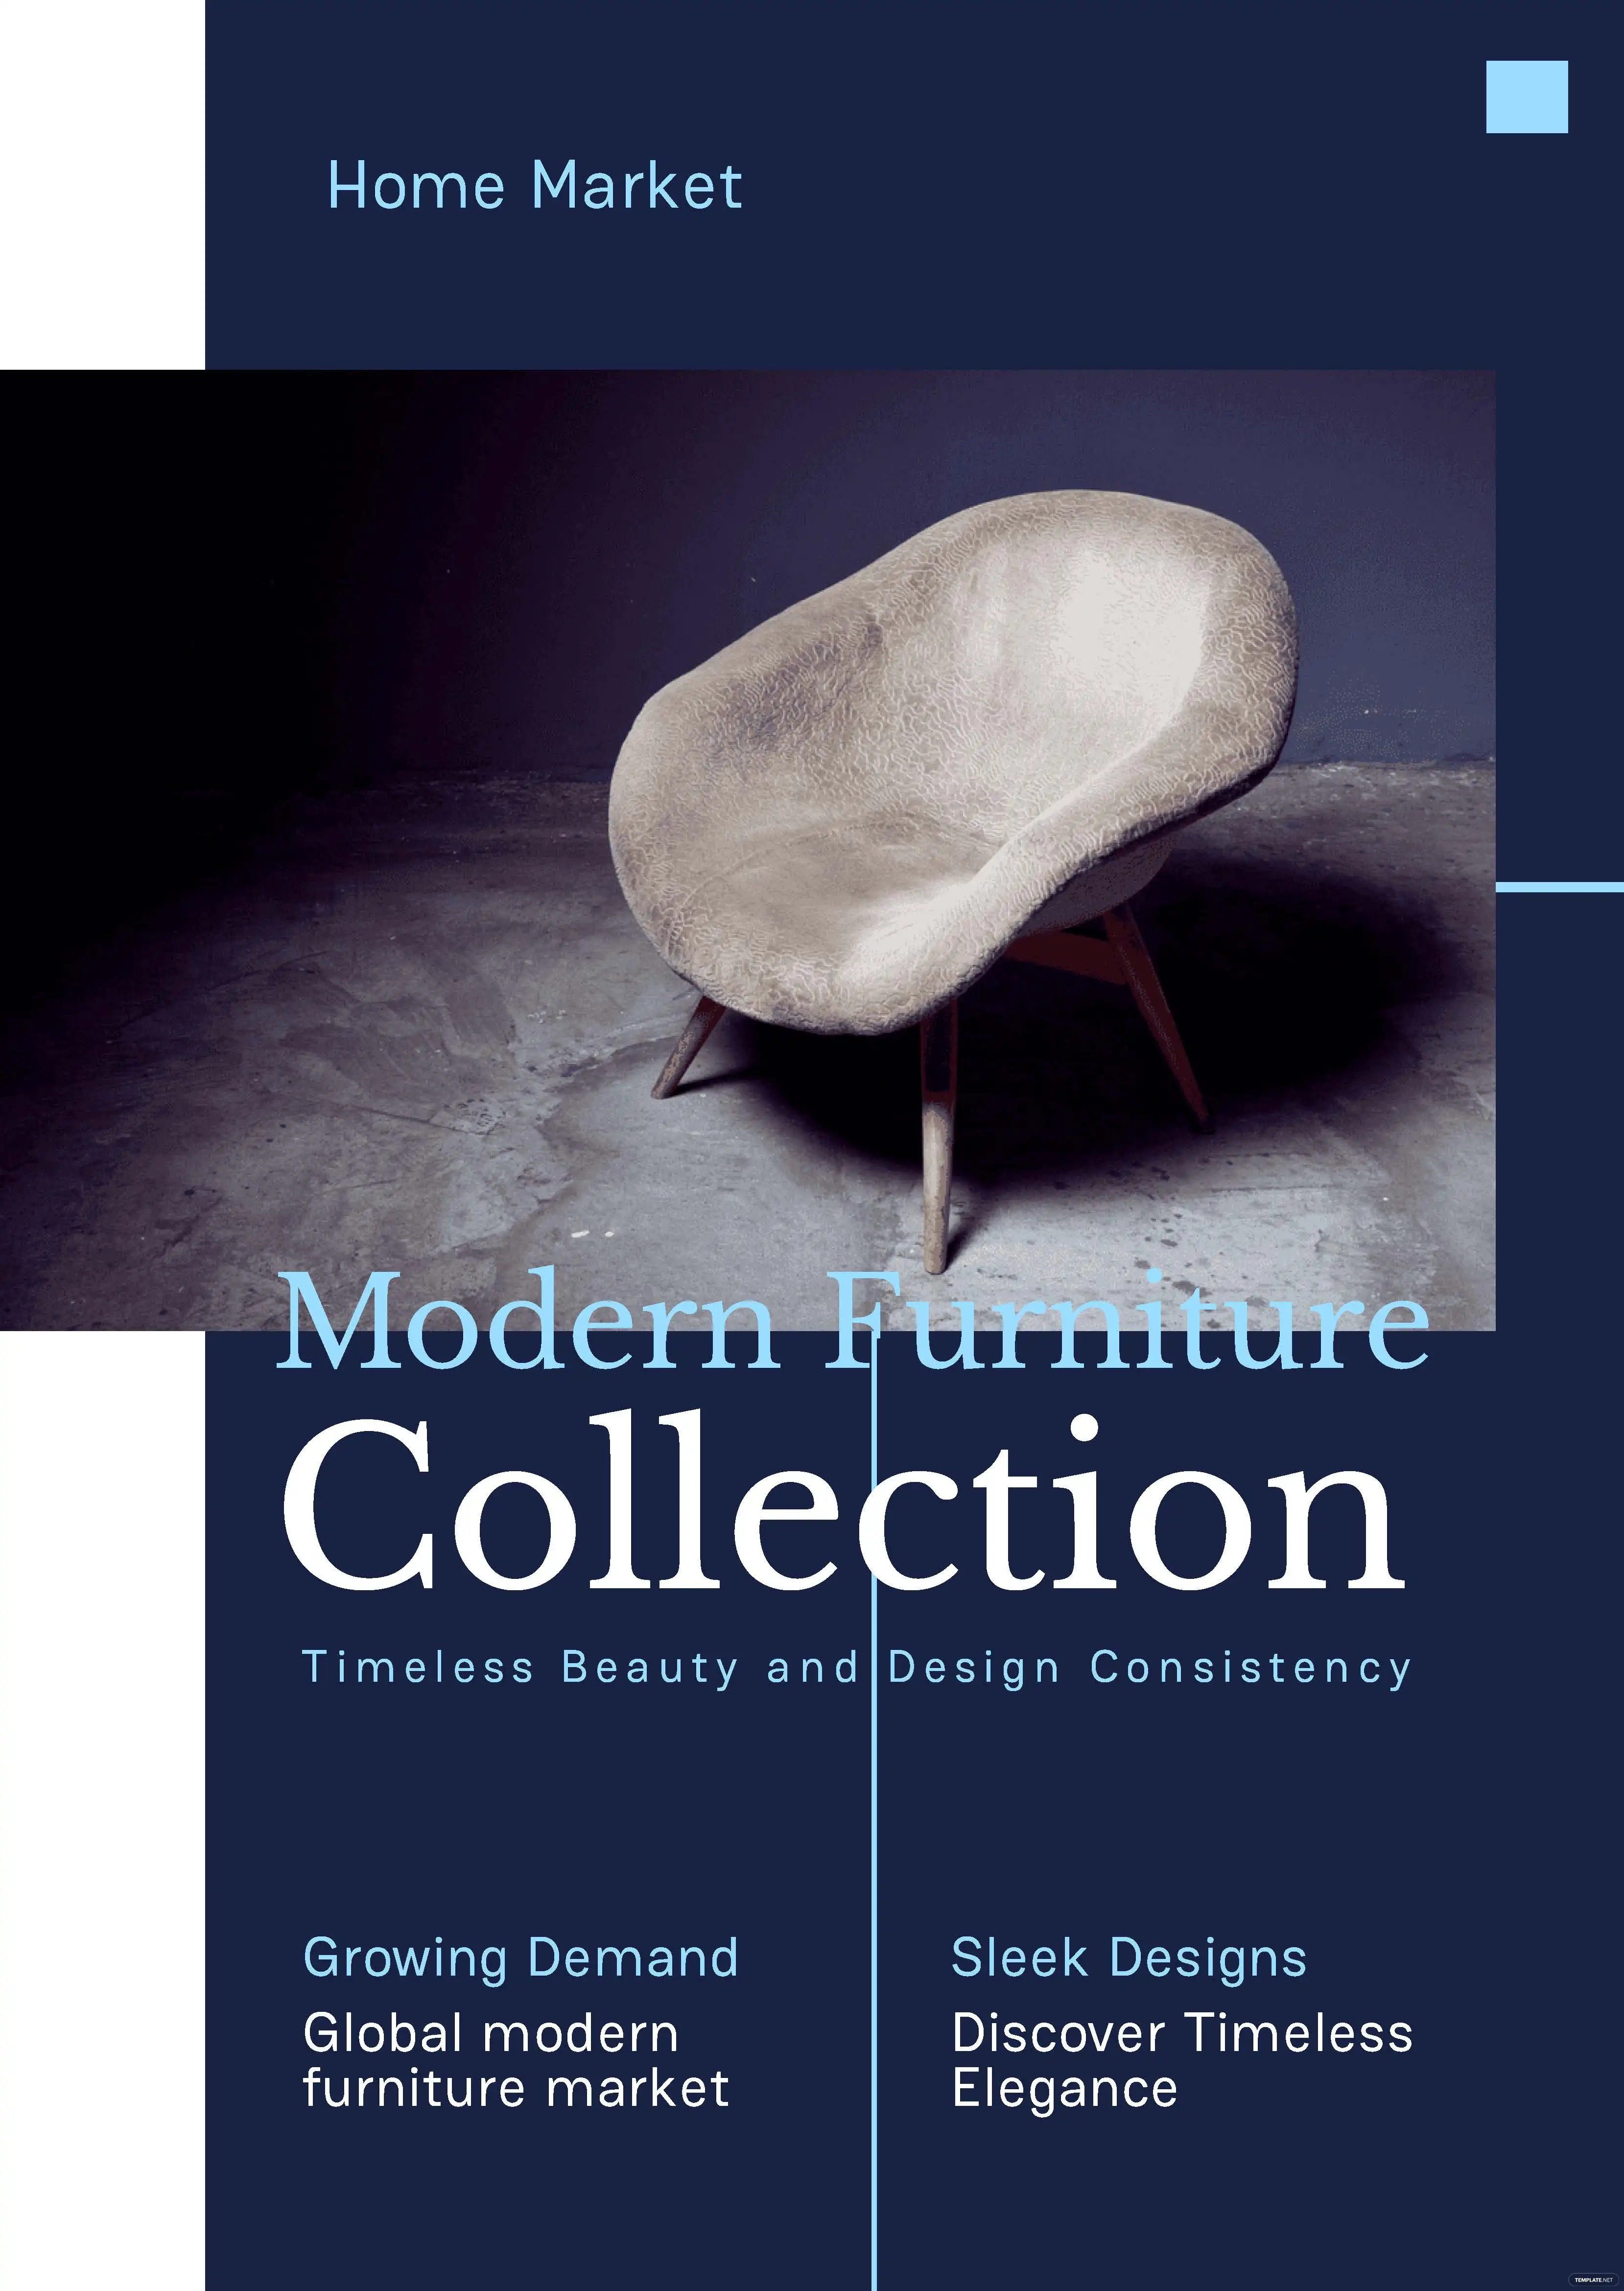 furniture-booklet